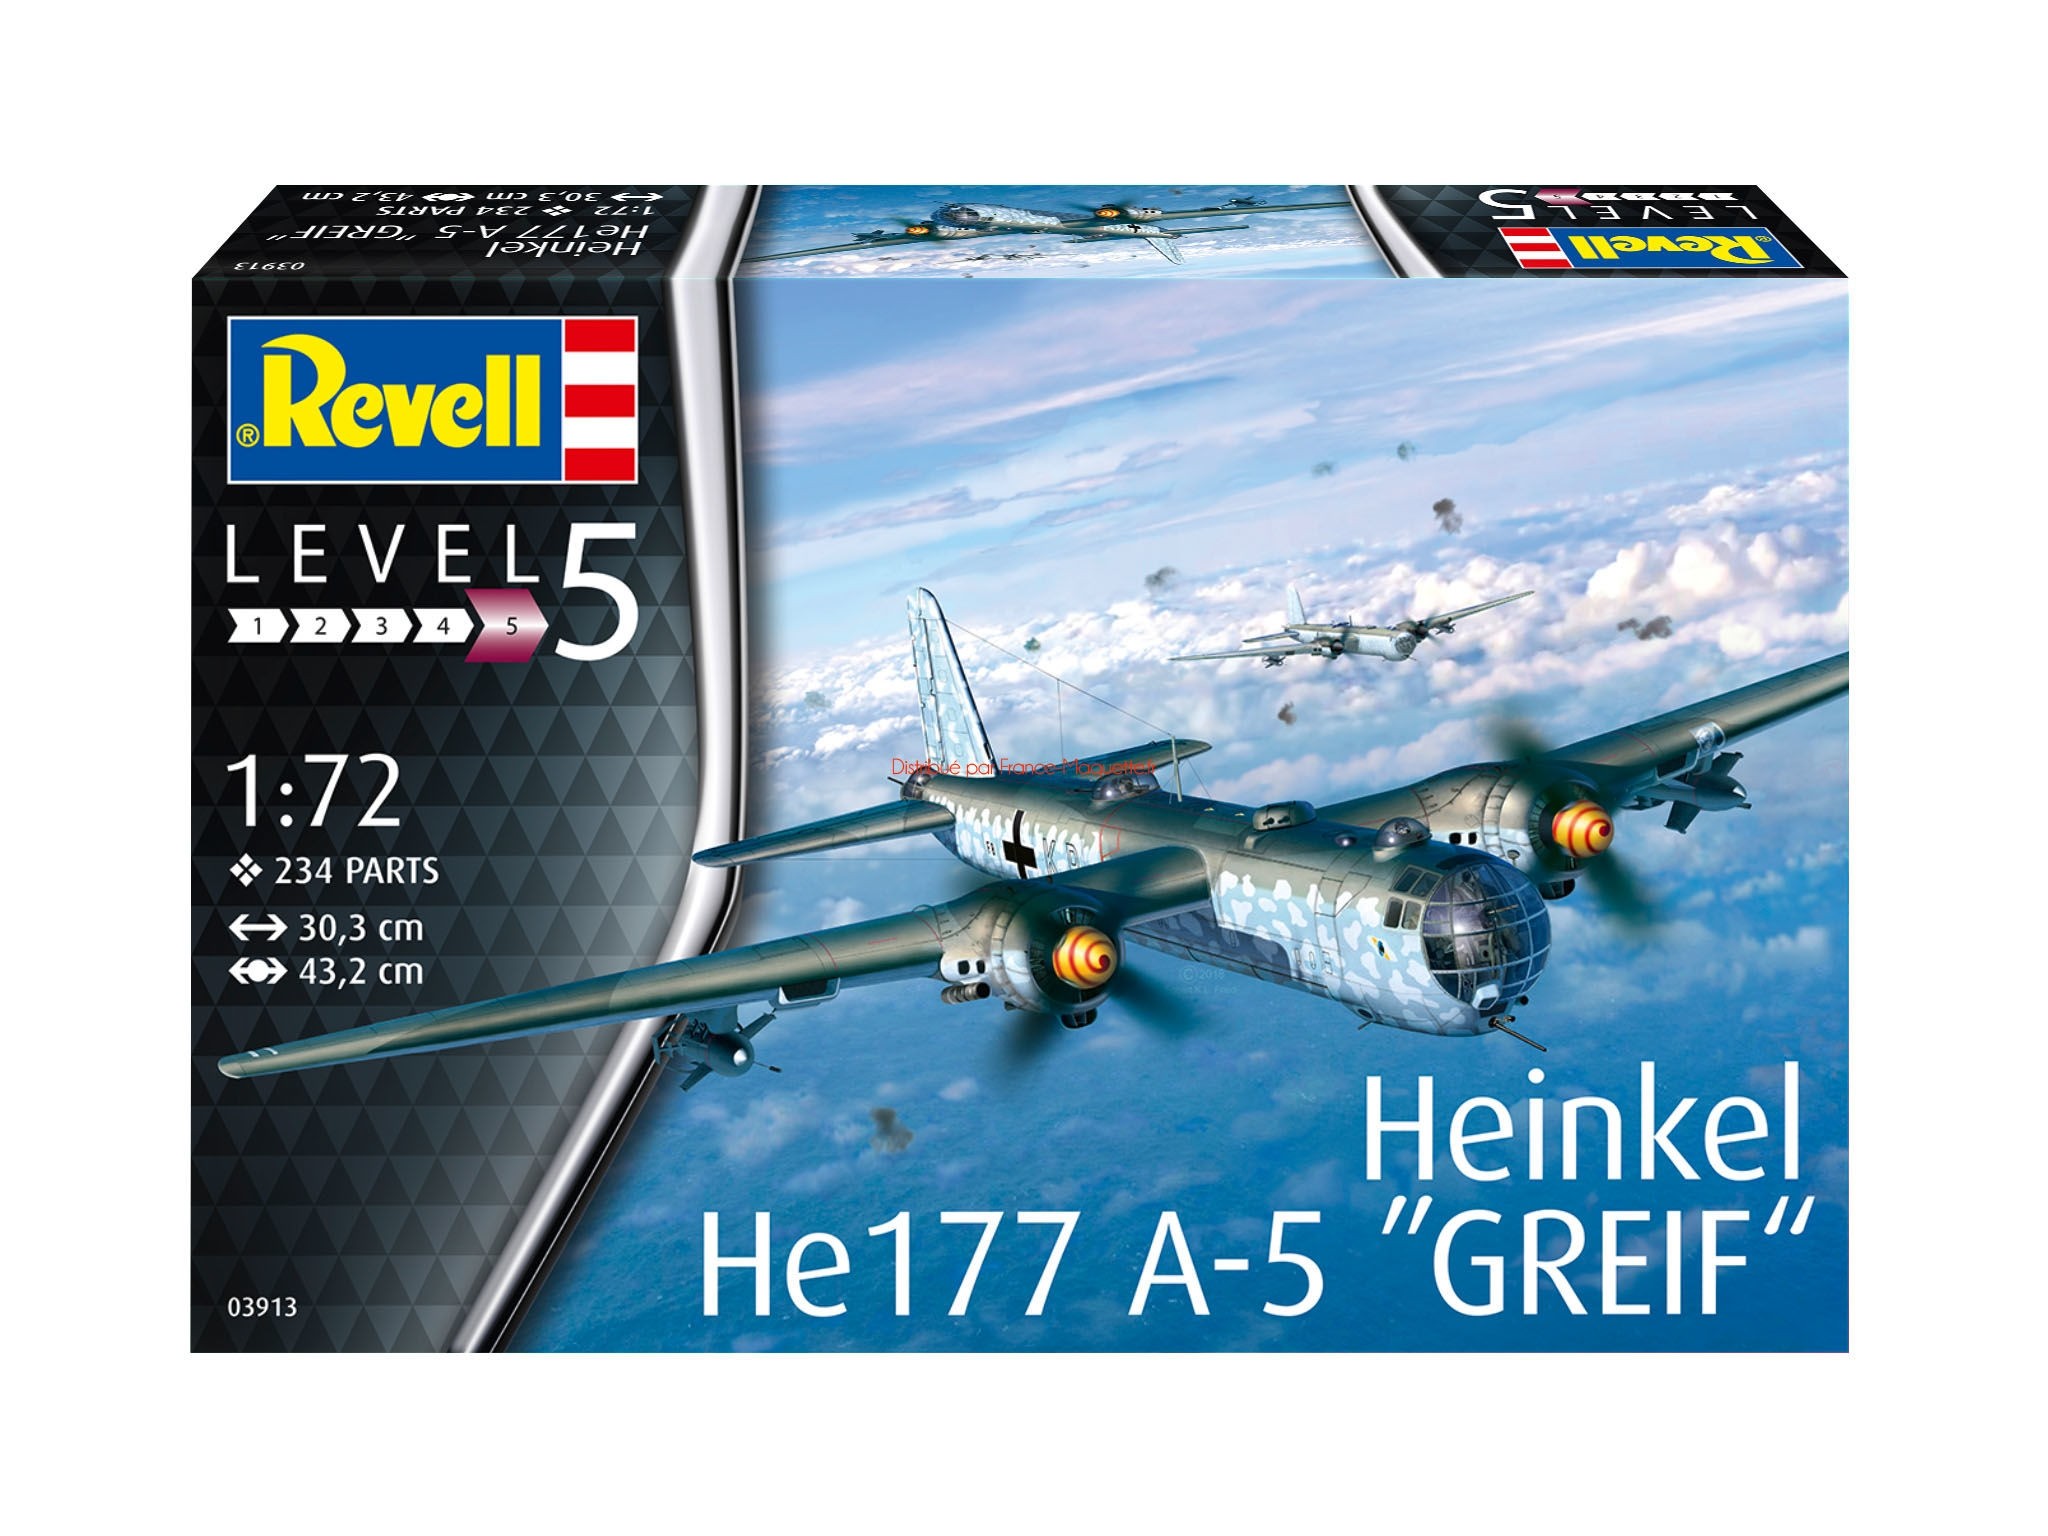 Heinkel He177A-5 Grief